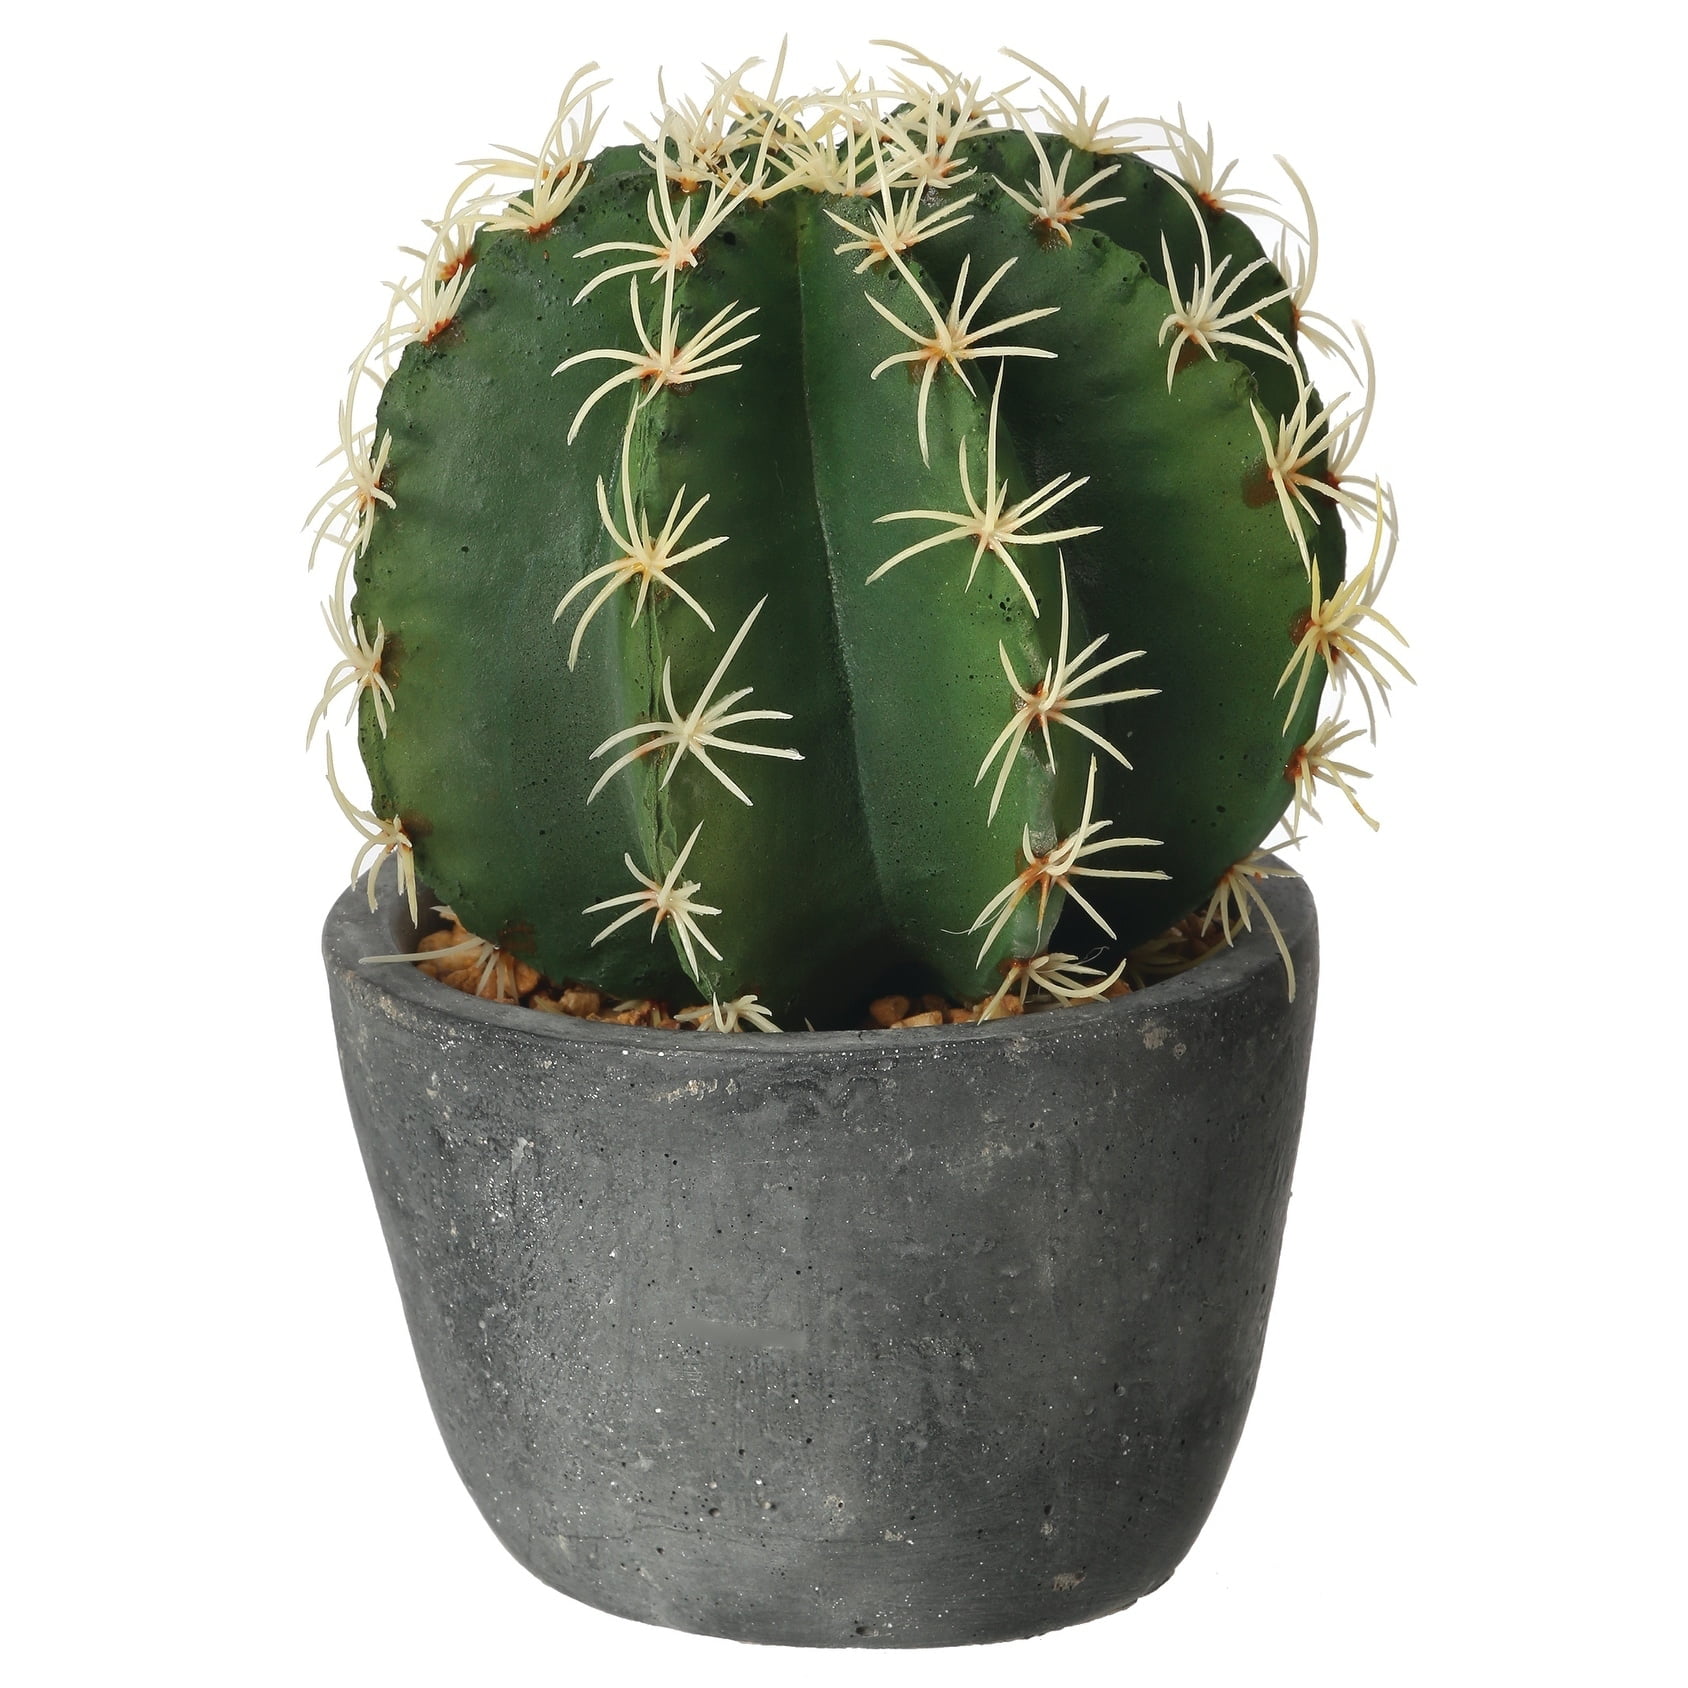 regency-5-in-diameter-artificial-barrel-cactus-in-cement-pot-green